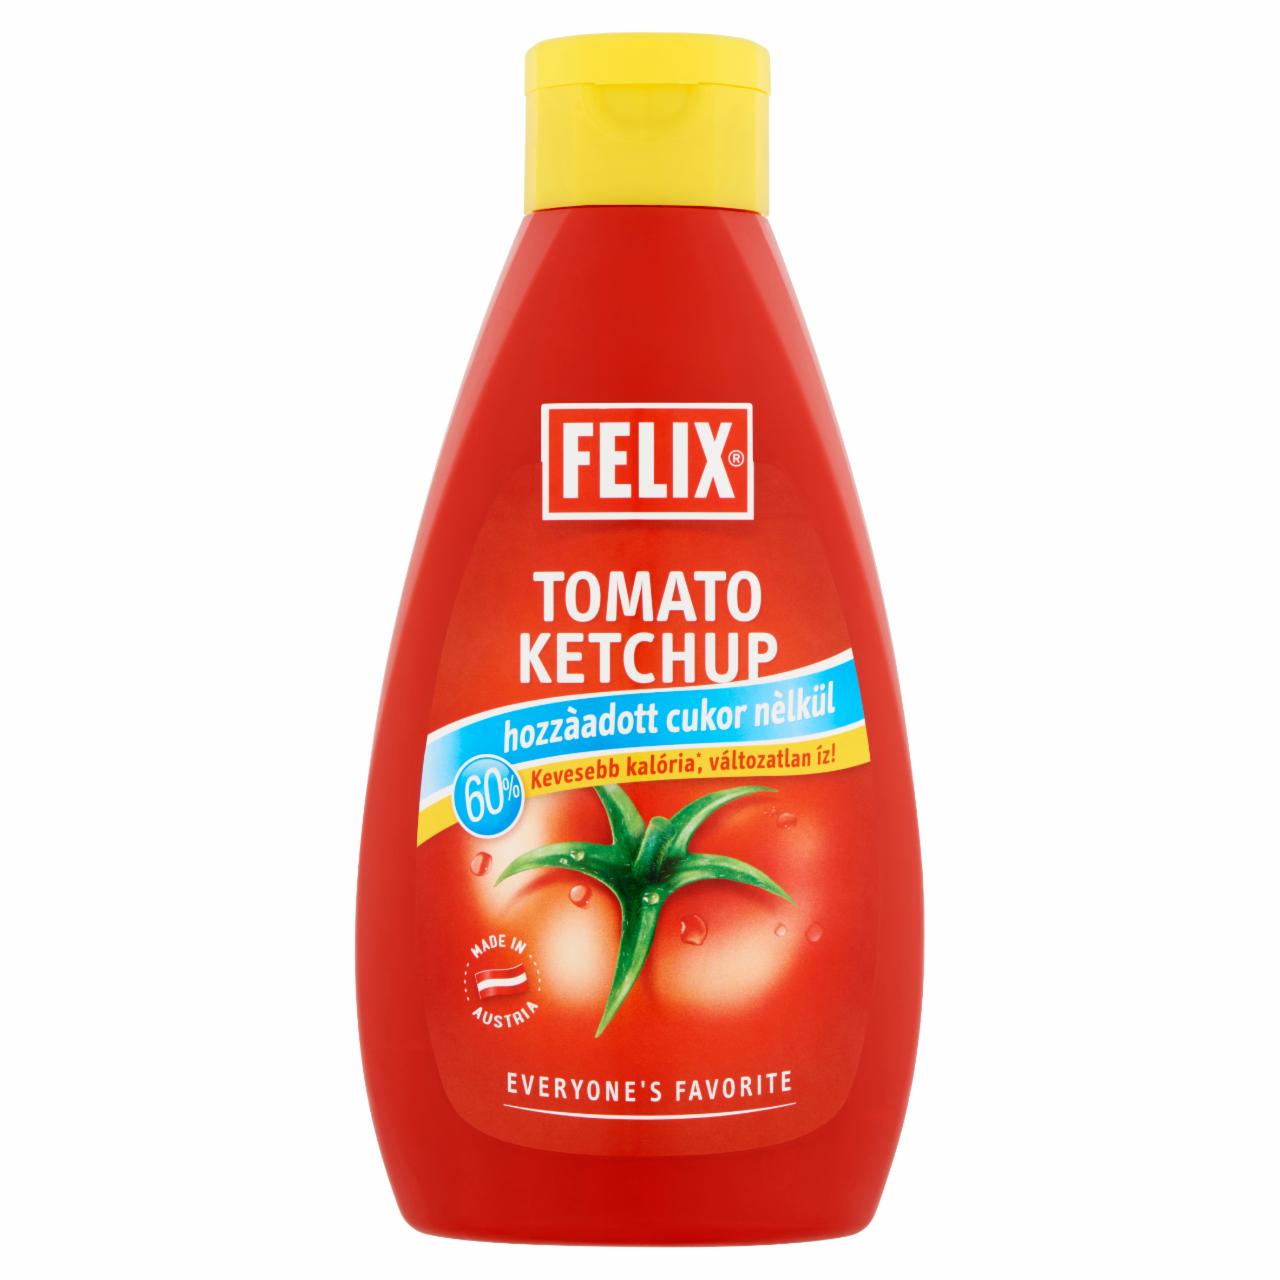 Képek - Felix ketchup hozzáadott cukor nélkül, édesítőszerrel édesítve 960 g